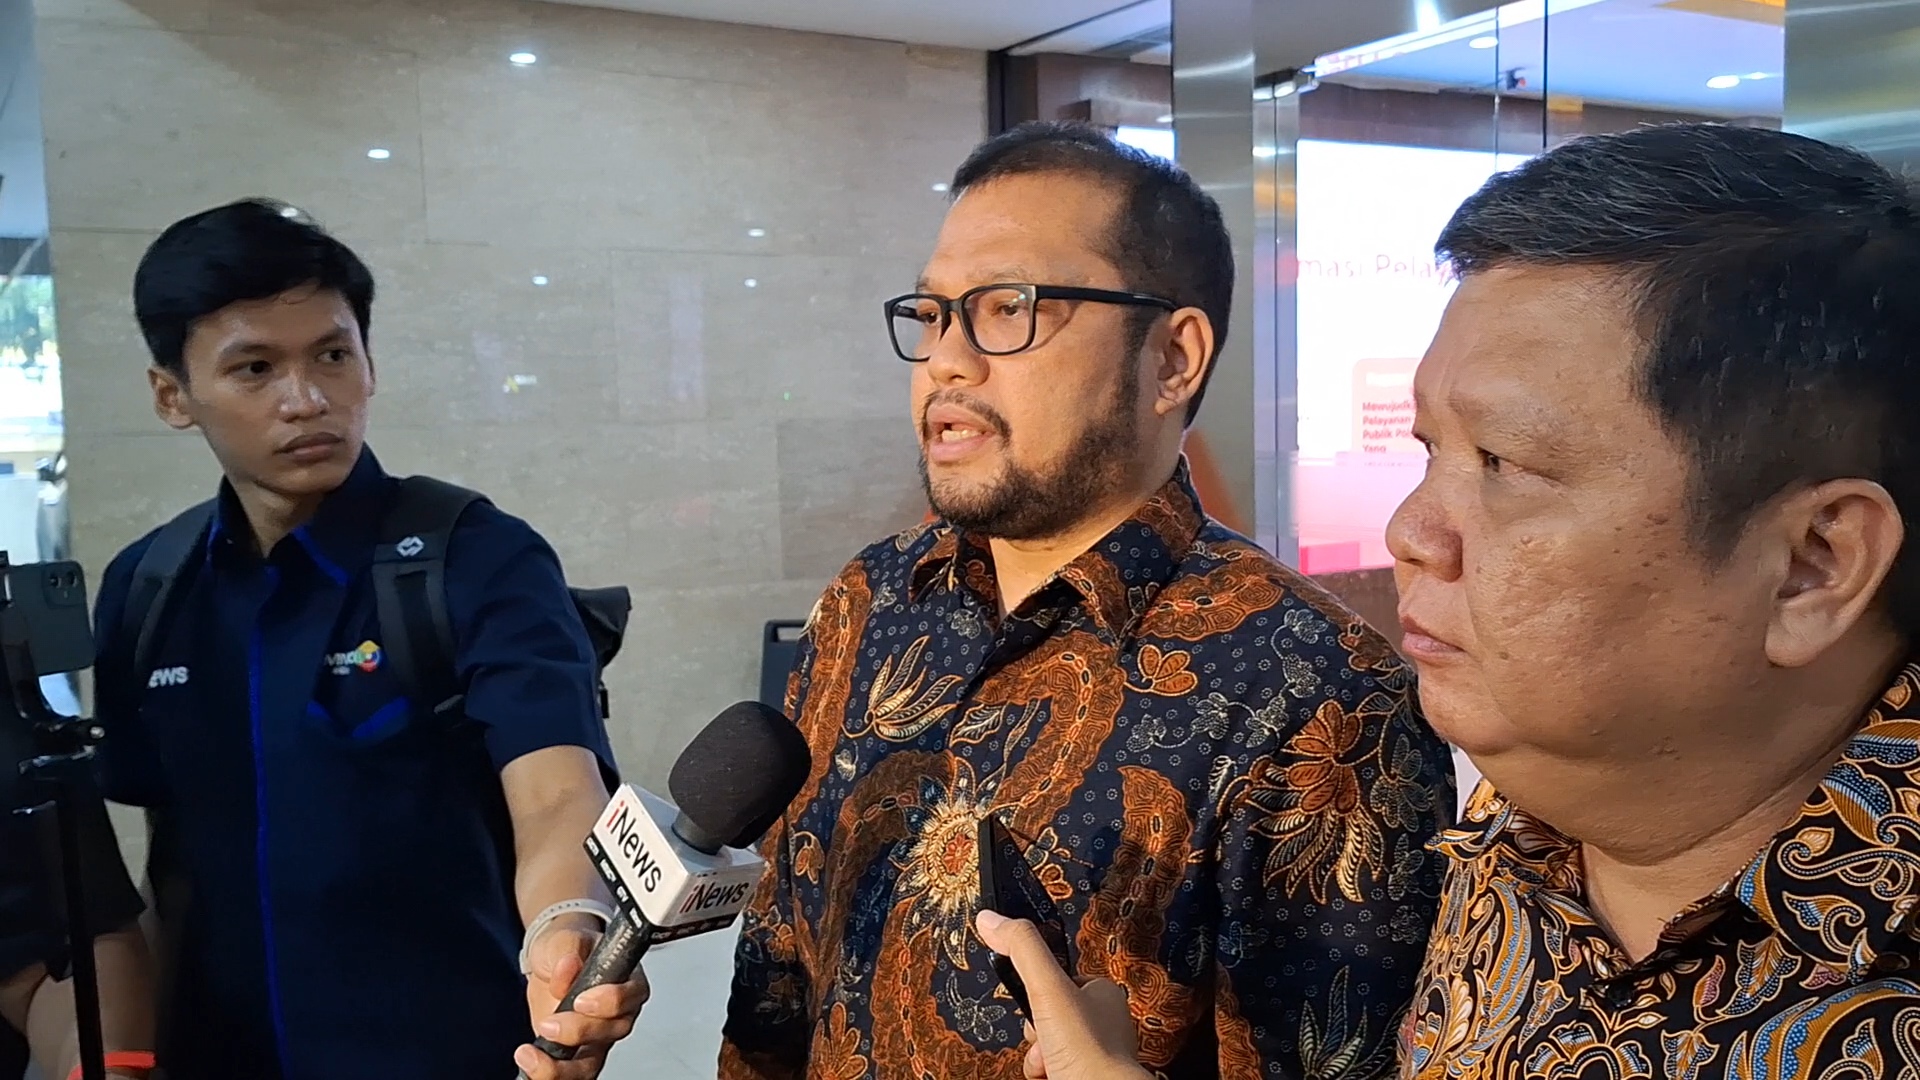 Saksi Kasus Vina Cirebon Dede-Dedi Mulyadi Dilaporkan ke Polisi, Kuasa Hukum: Kami Siap Hadapi